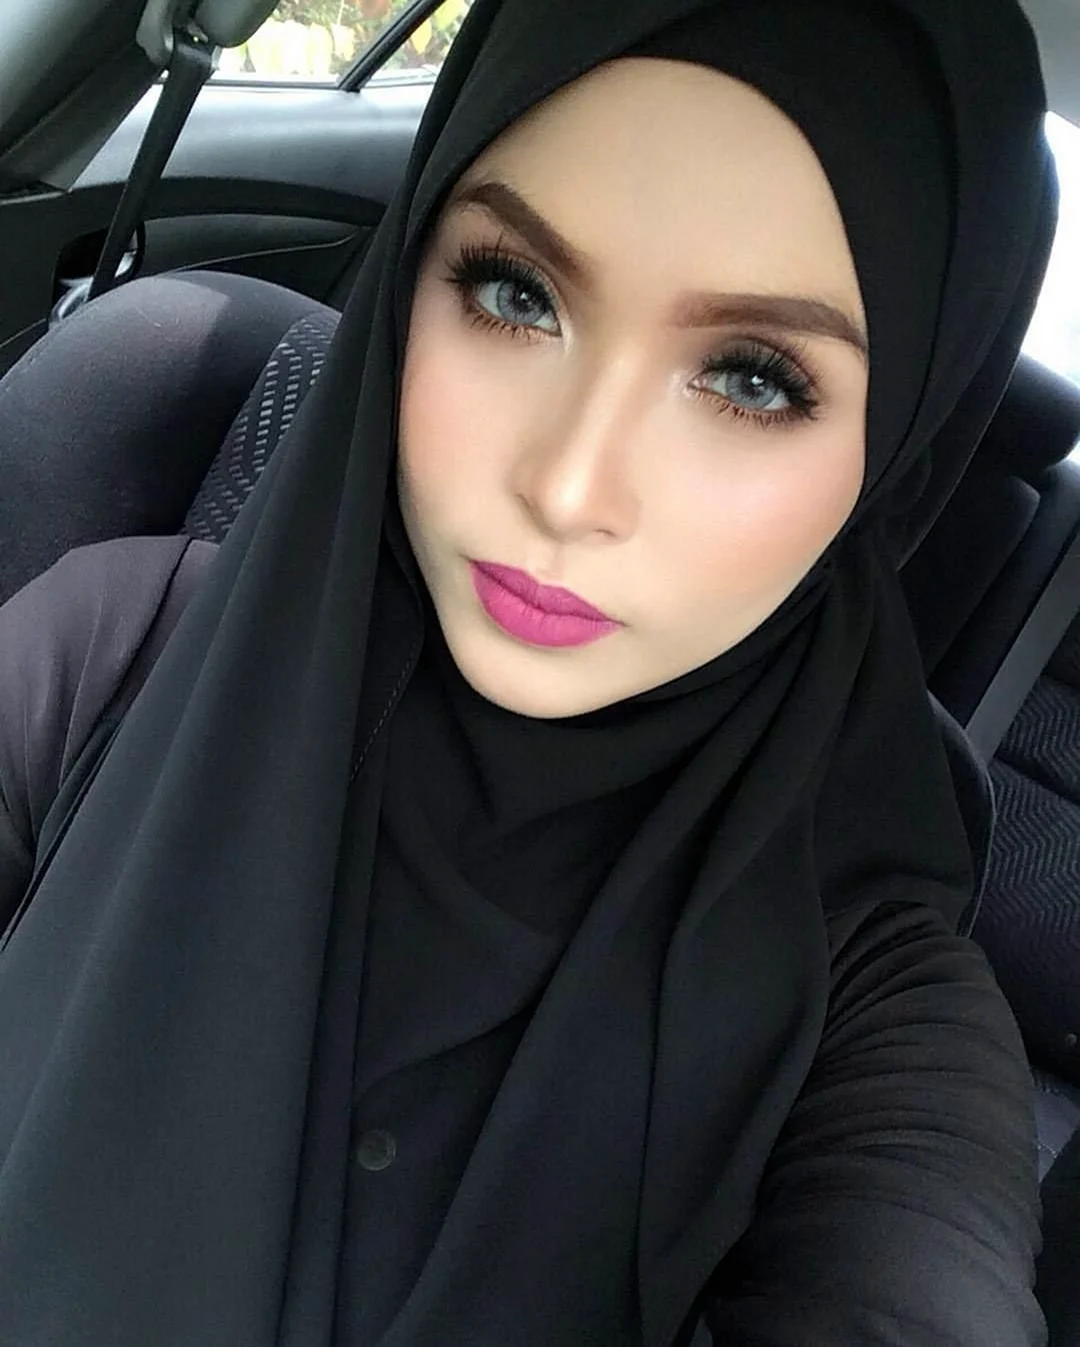 Чеченки Hadid hidjab. Красивая девушка